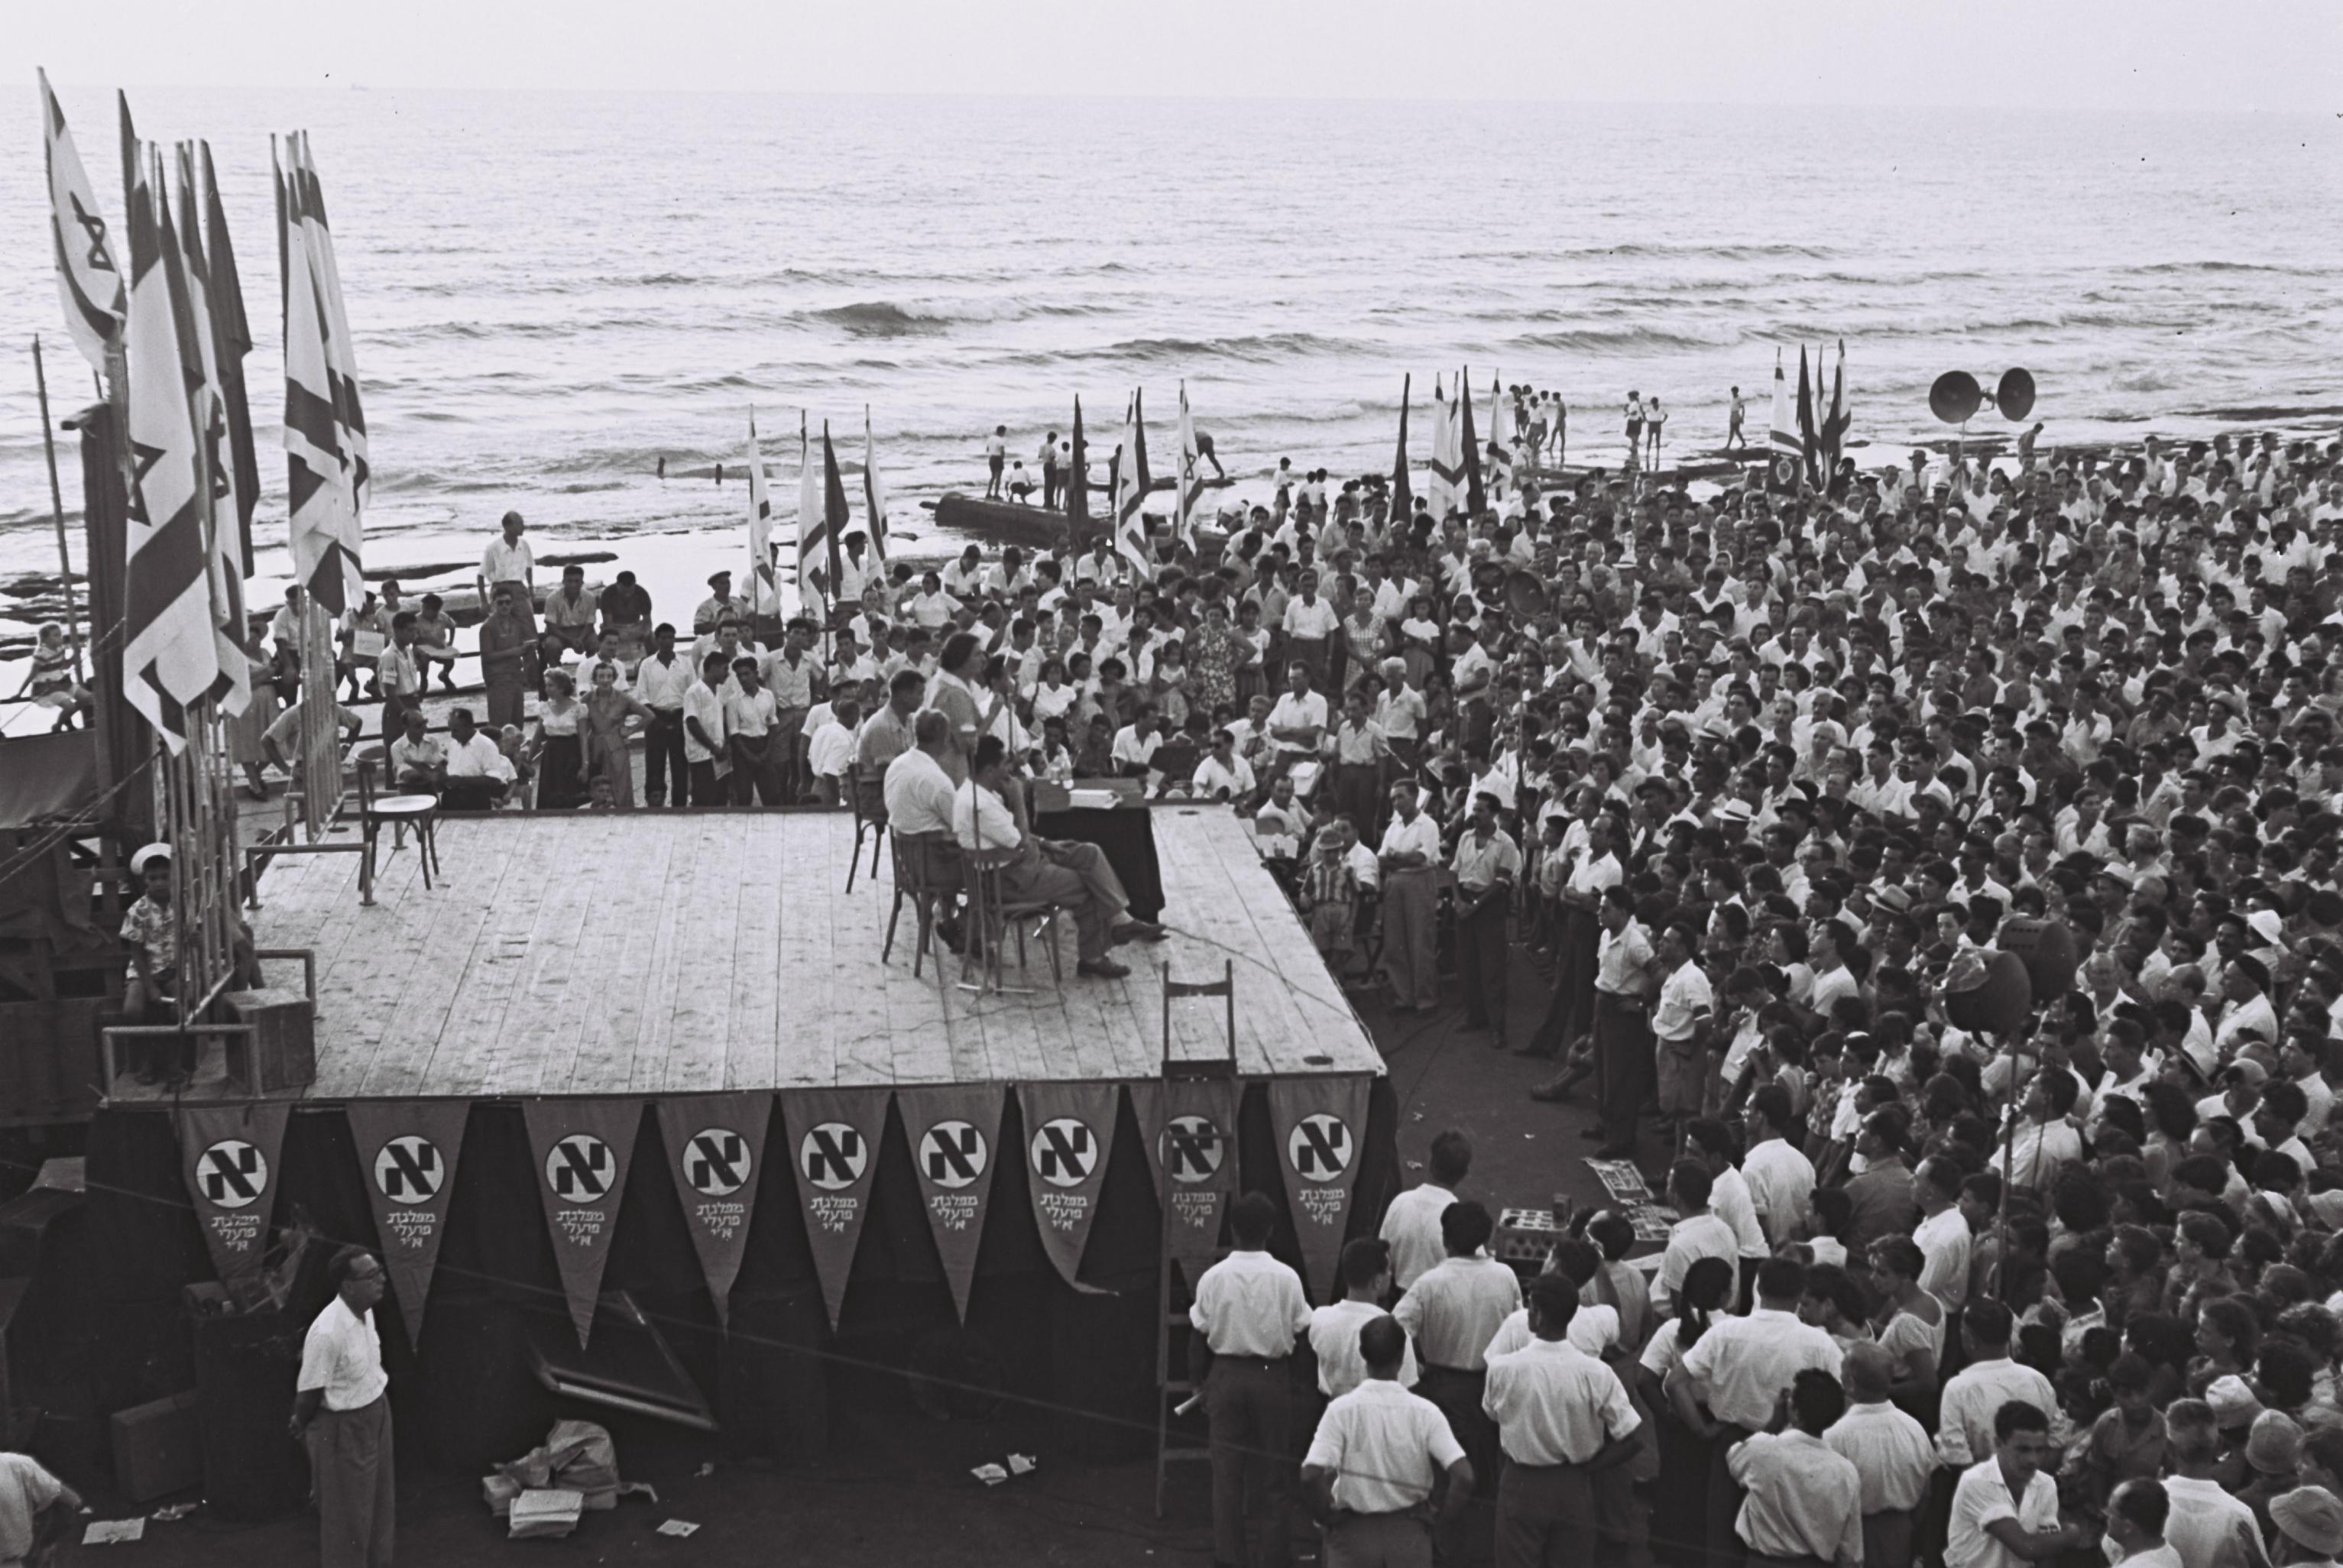 <p>אסיפת בחירות מפא"י על חוף הים בתל אביב, 30.7.1955. צילום: פריץ כהן, אוסף התצלומים הלאומי.</p>